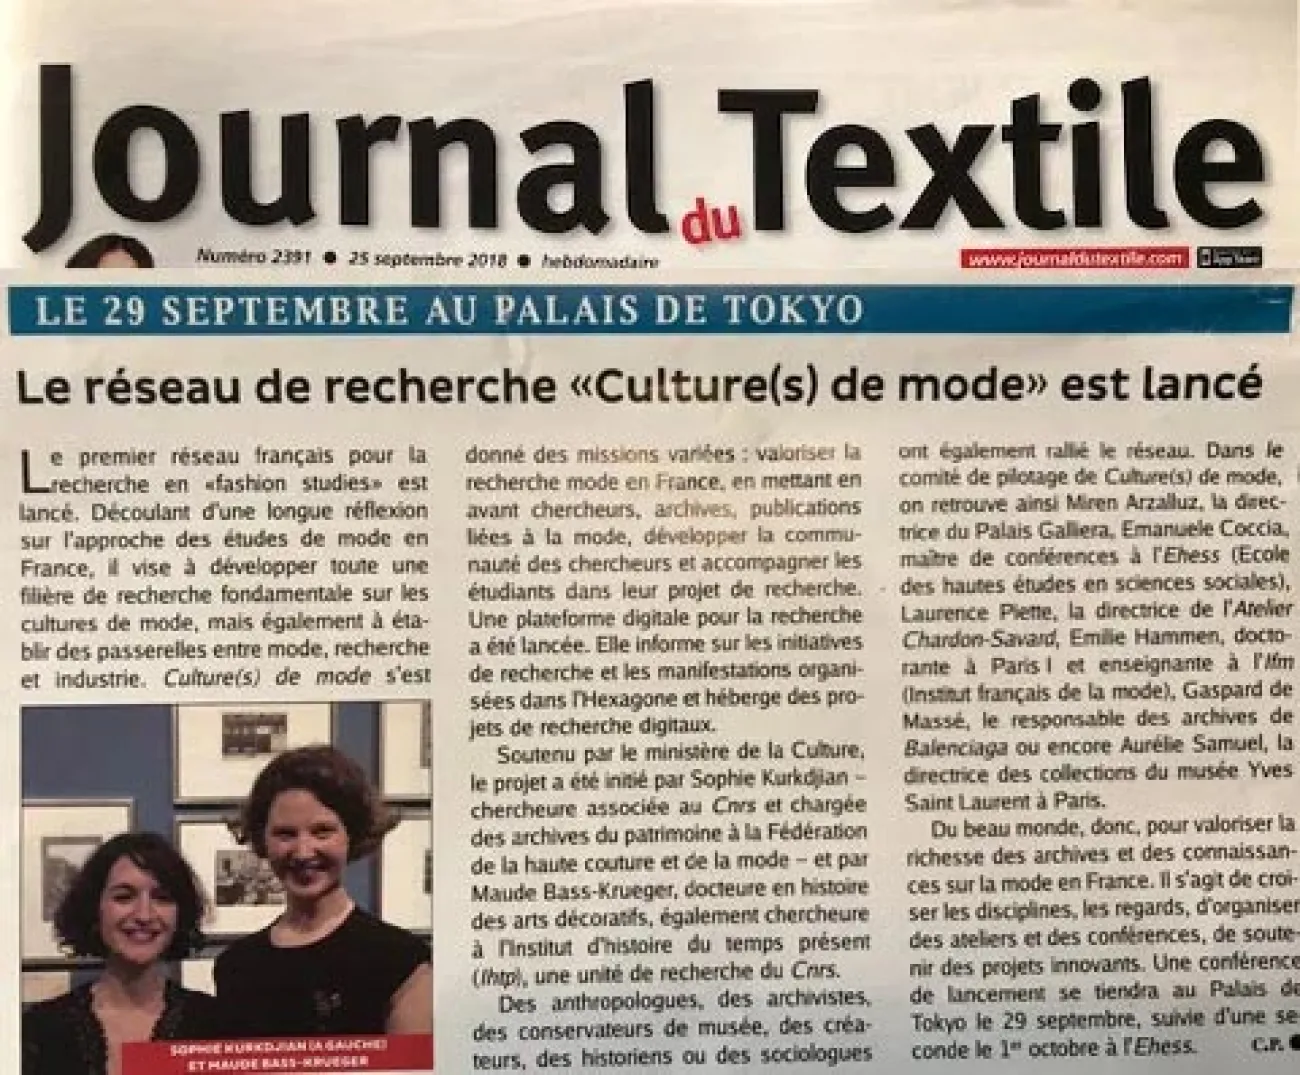 Journal du textile Atelier Chardon Savard